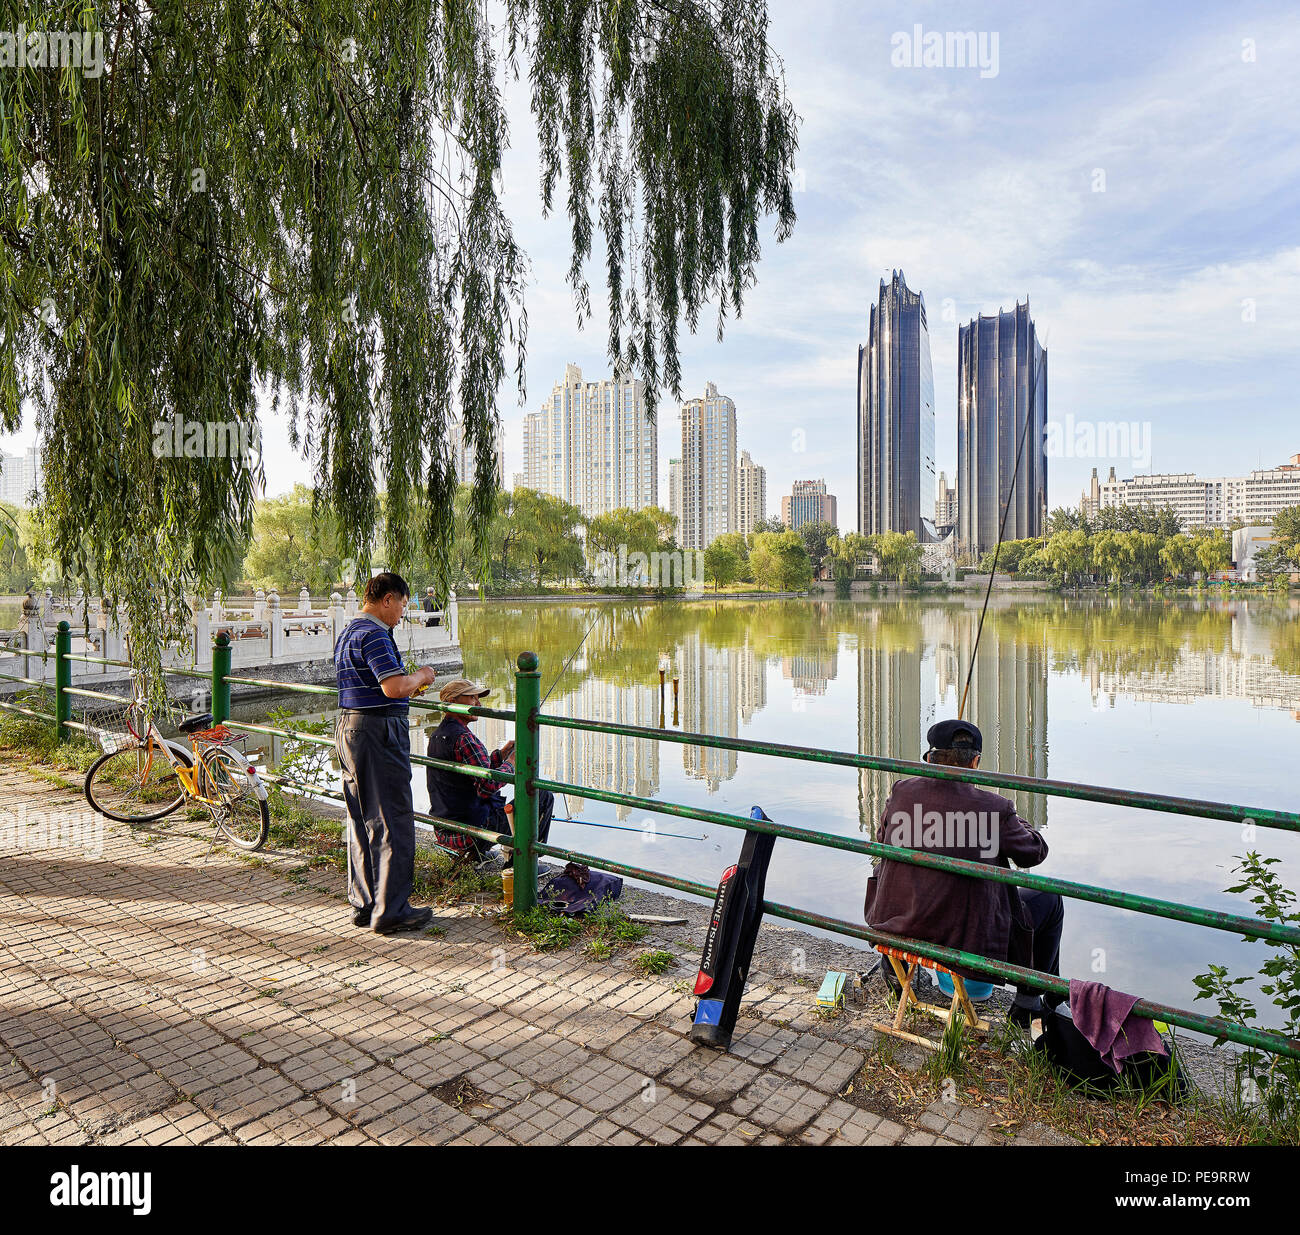 Le Parc Chaoyang Plaza, vue du lac de Parc de Chaoyang. Le Parc Chaoyang Plaza, Beijing, Chine. Architecte : MAD Architectes, 2017. Banque D'Images